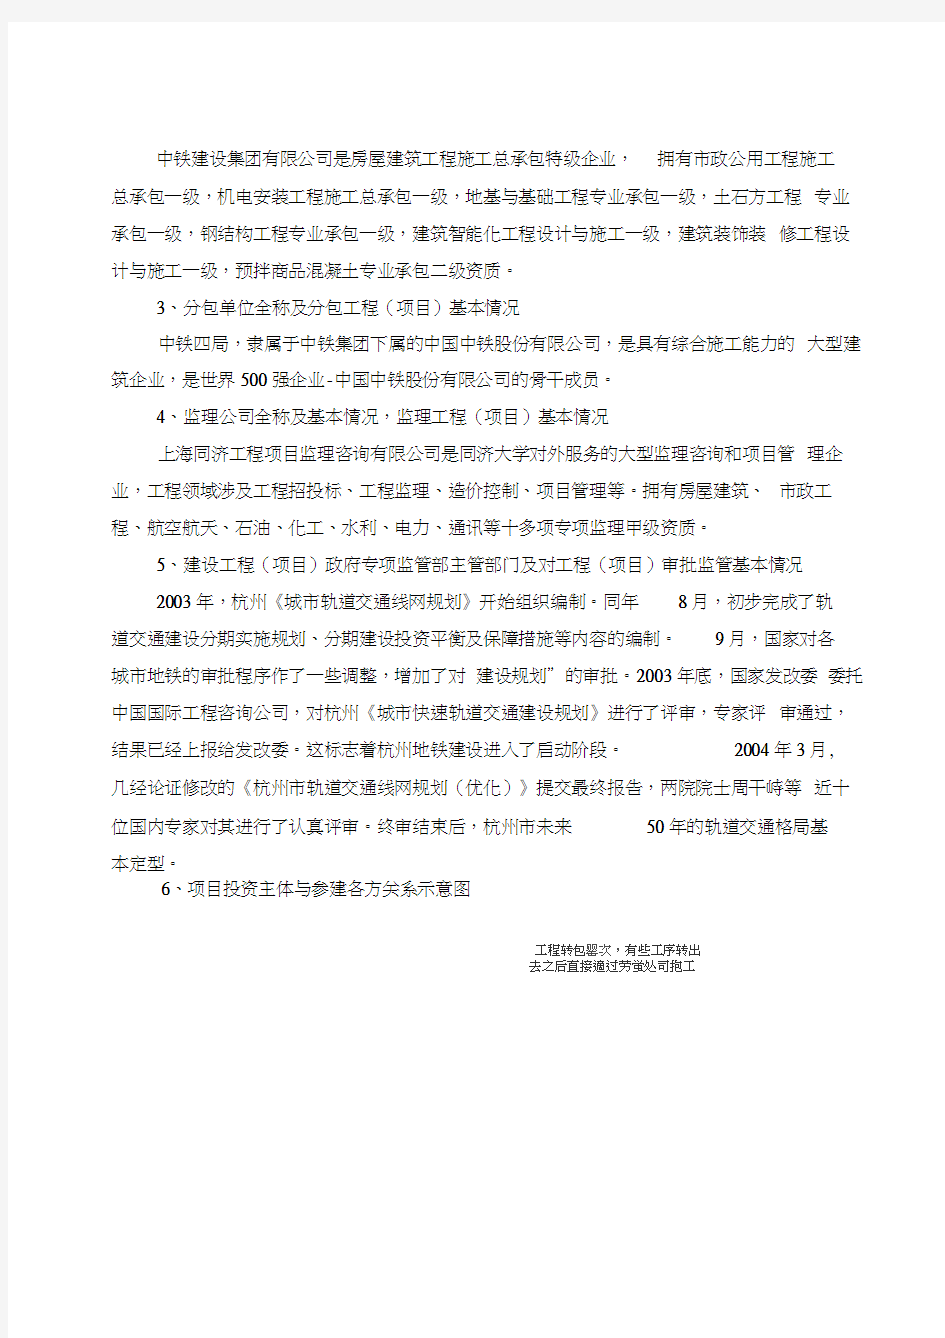 杭州地铁安全事故调查报告